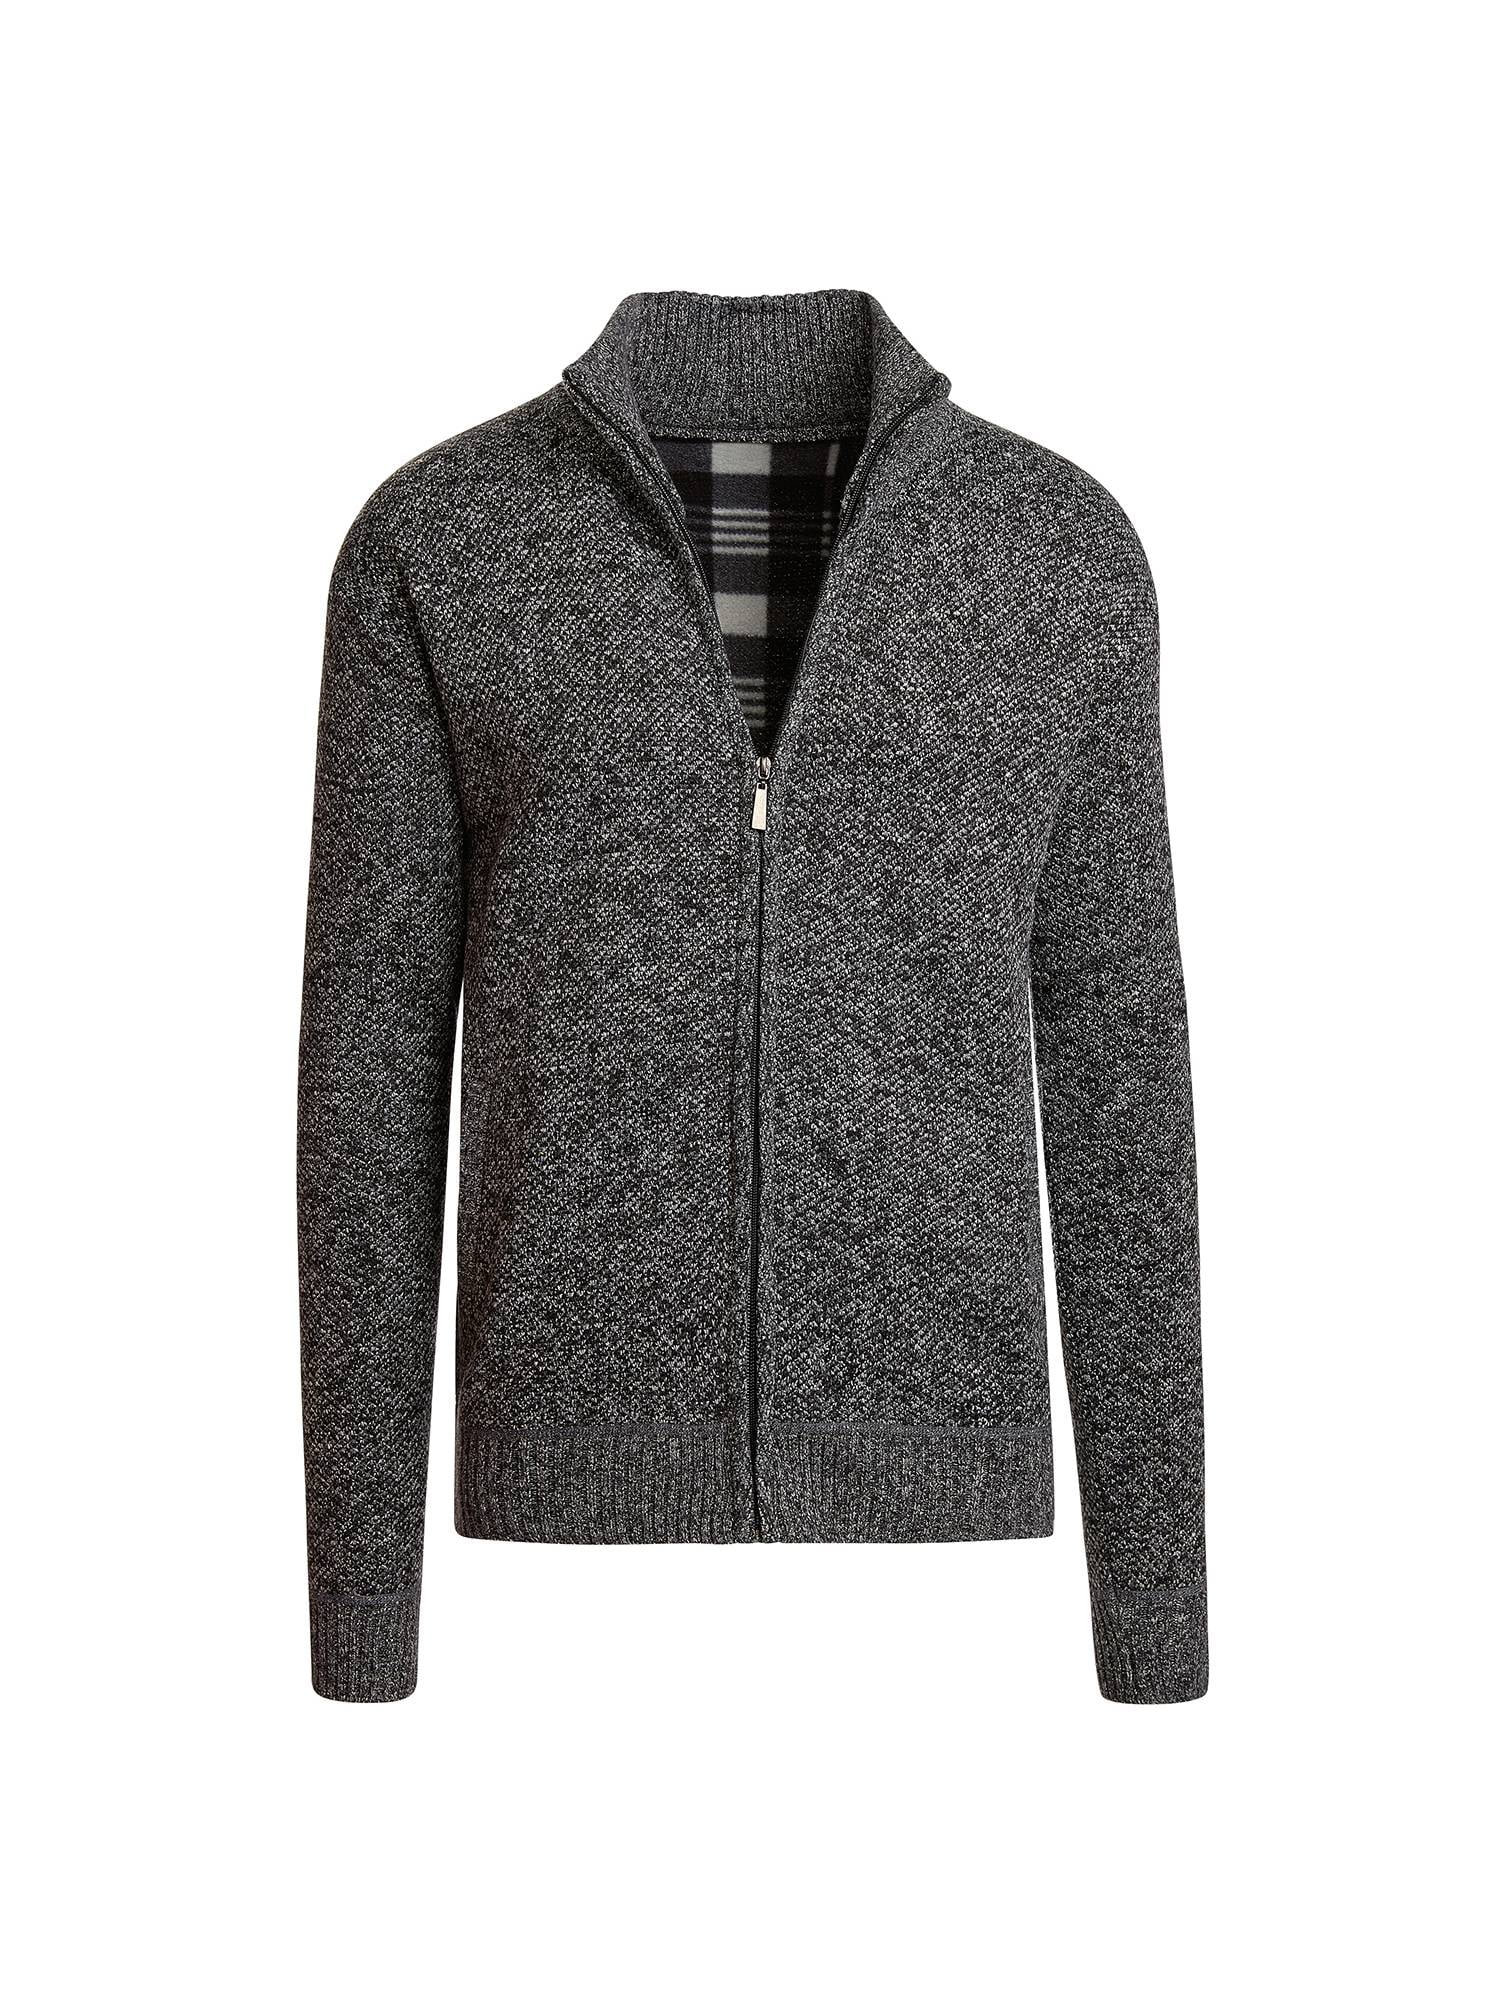 Alta Men's Casual Fleece Lined Full-Zip Sweater Jacket - Walmart.com